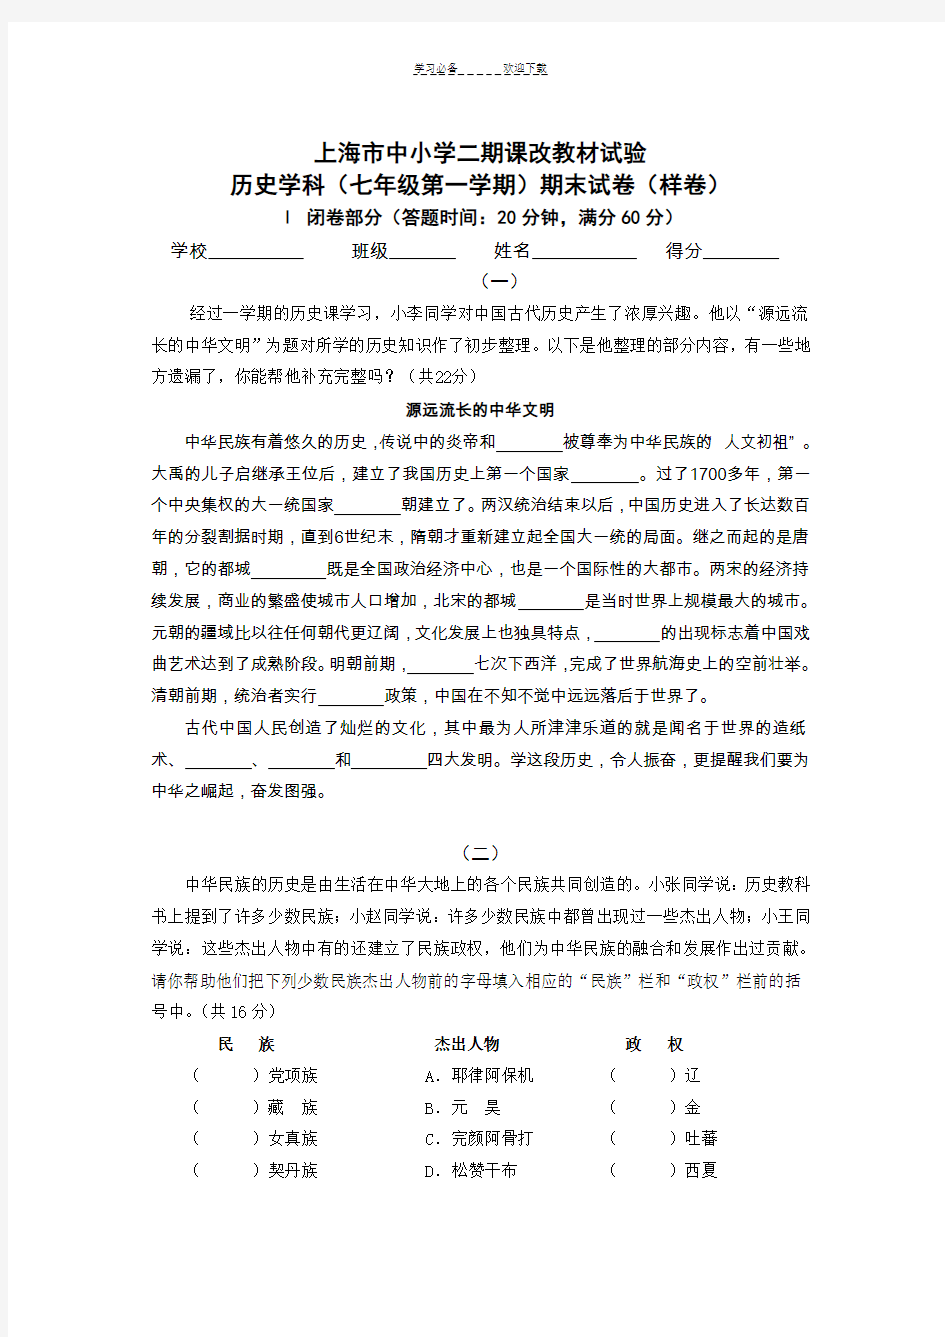 上海市中小学二期课改教材试验历史学科(七年级第一学期)期末试卷(样卷)